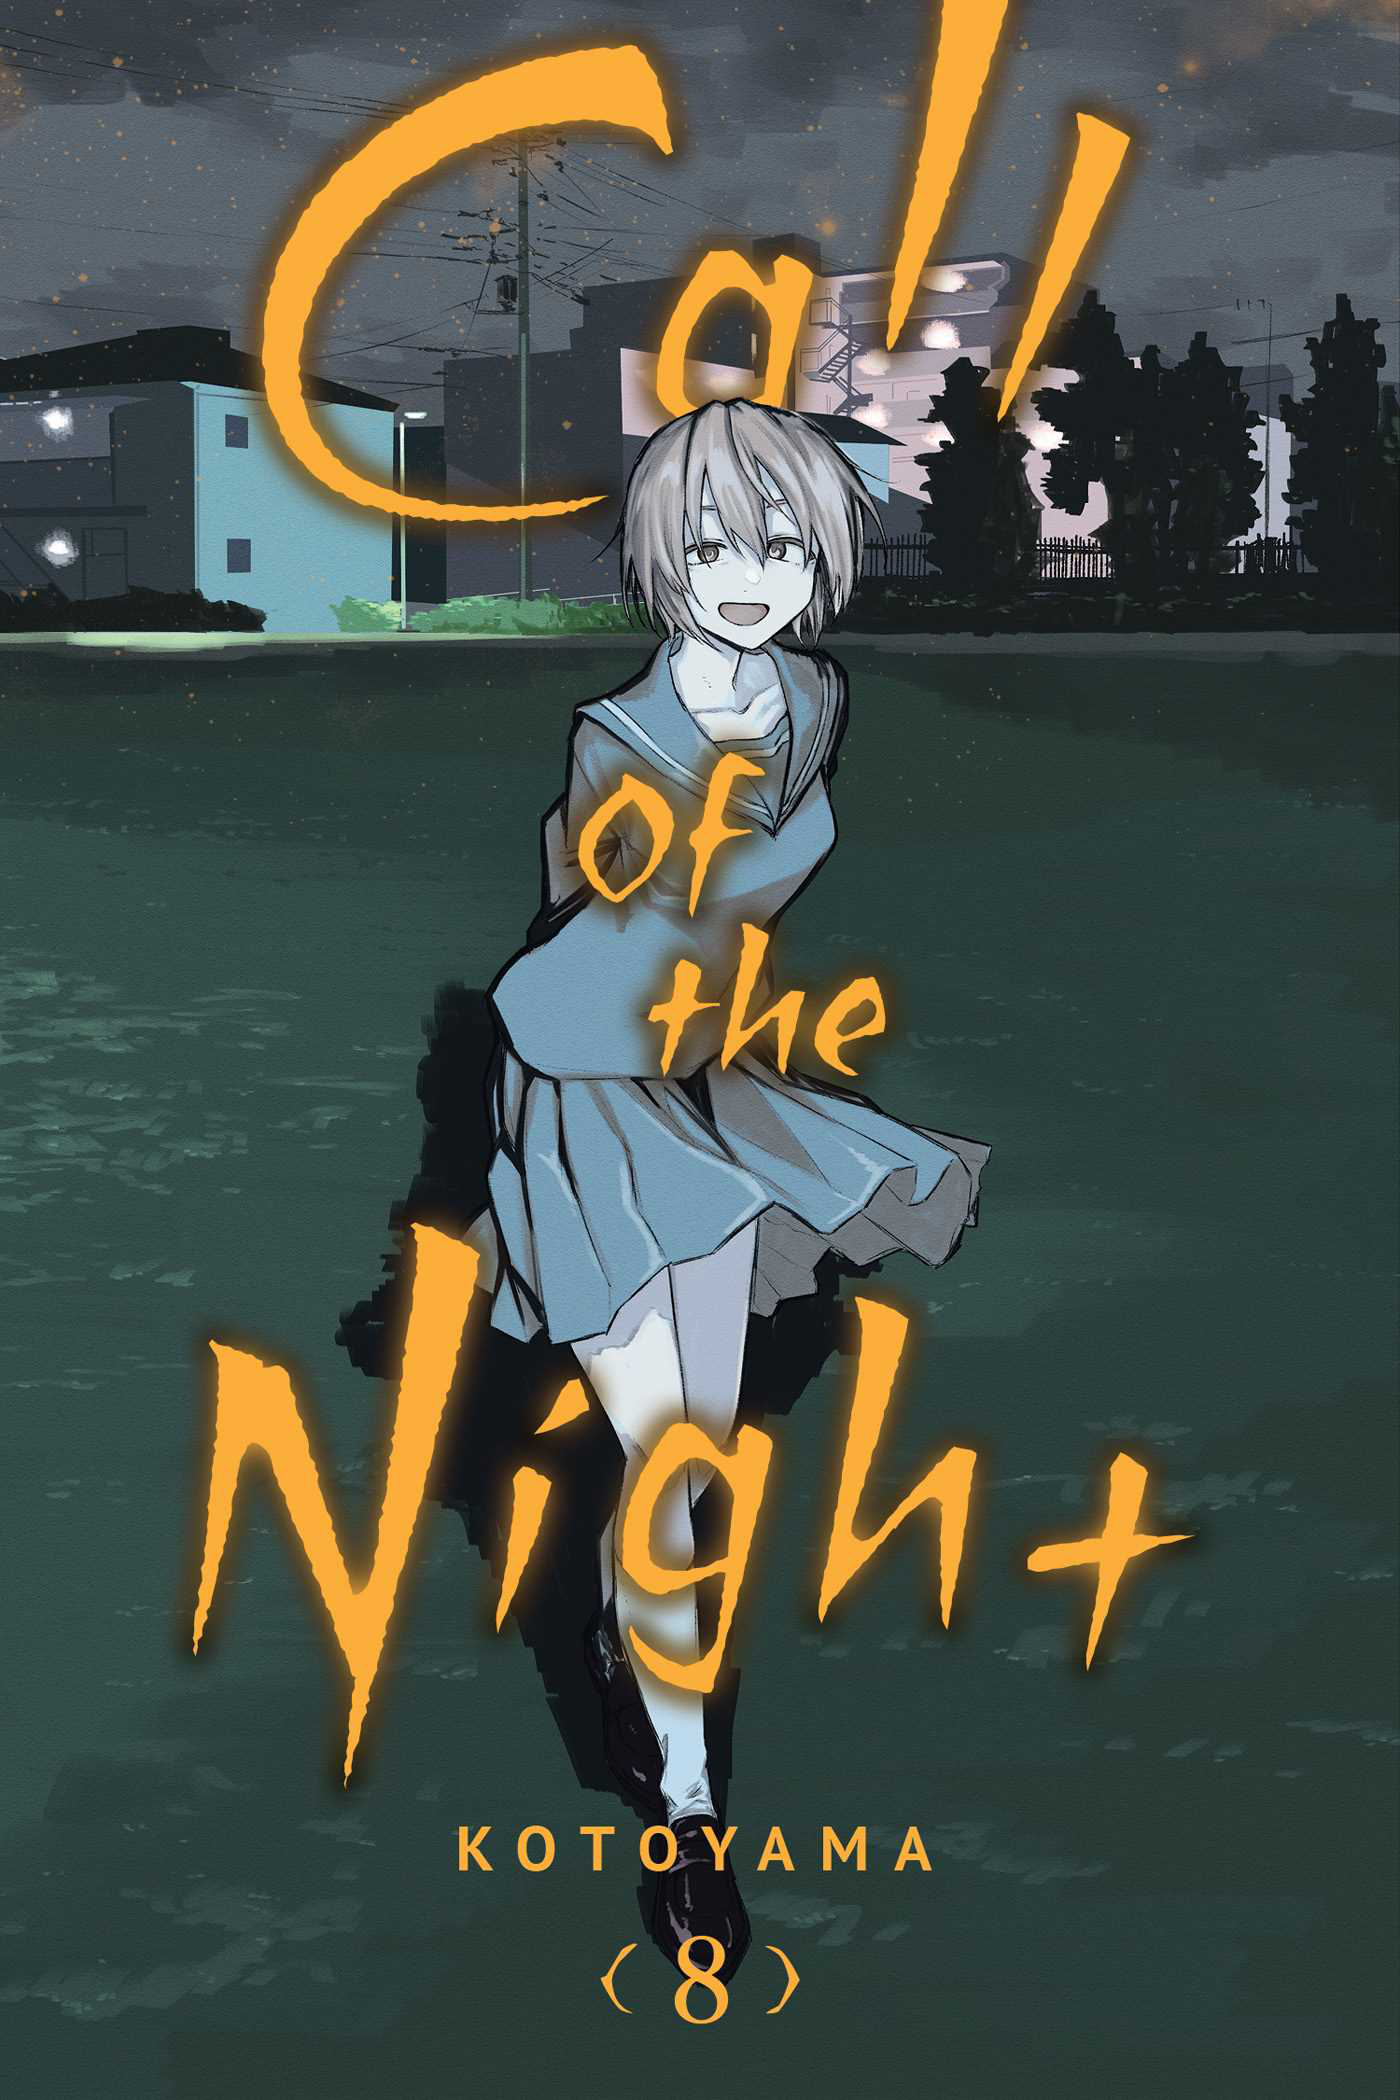 Yofukashi no Uta Vol.13 (Call of the Night)